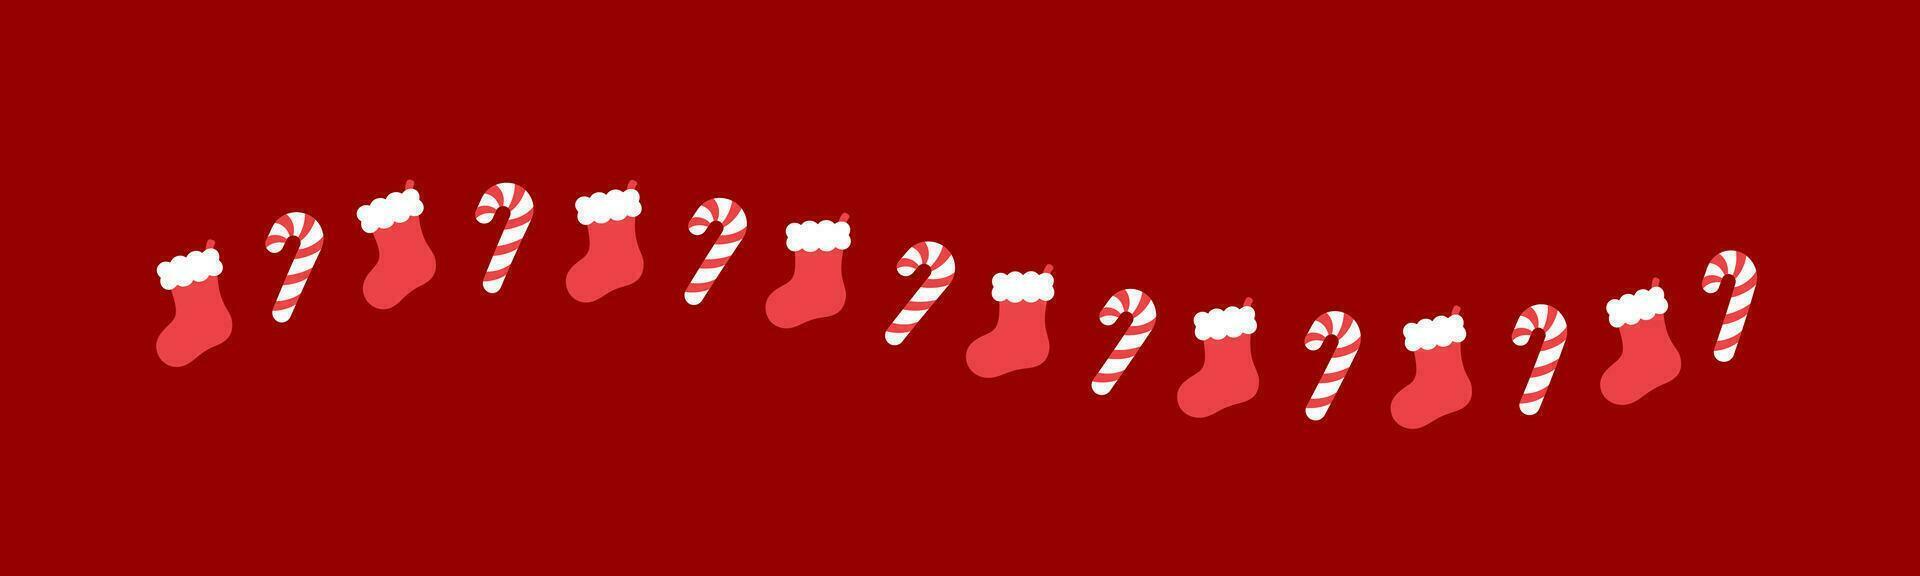 Navidad temática decorativo ondulado línea frontera y texto divisor, Navidad media y caramelo caña modelo. vector ilustración.